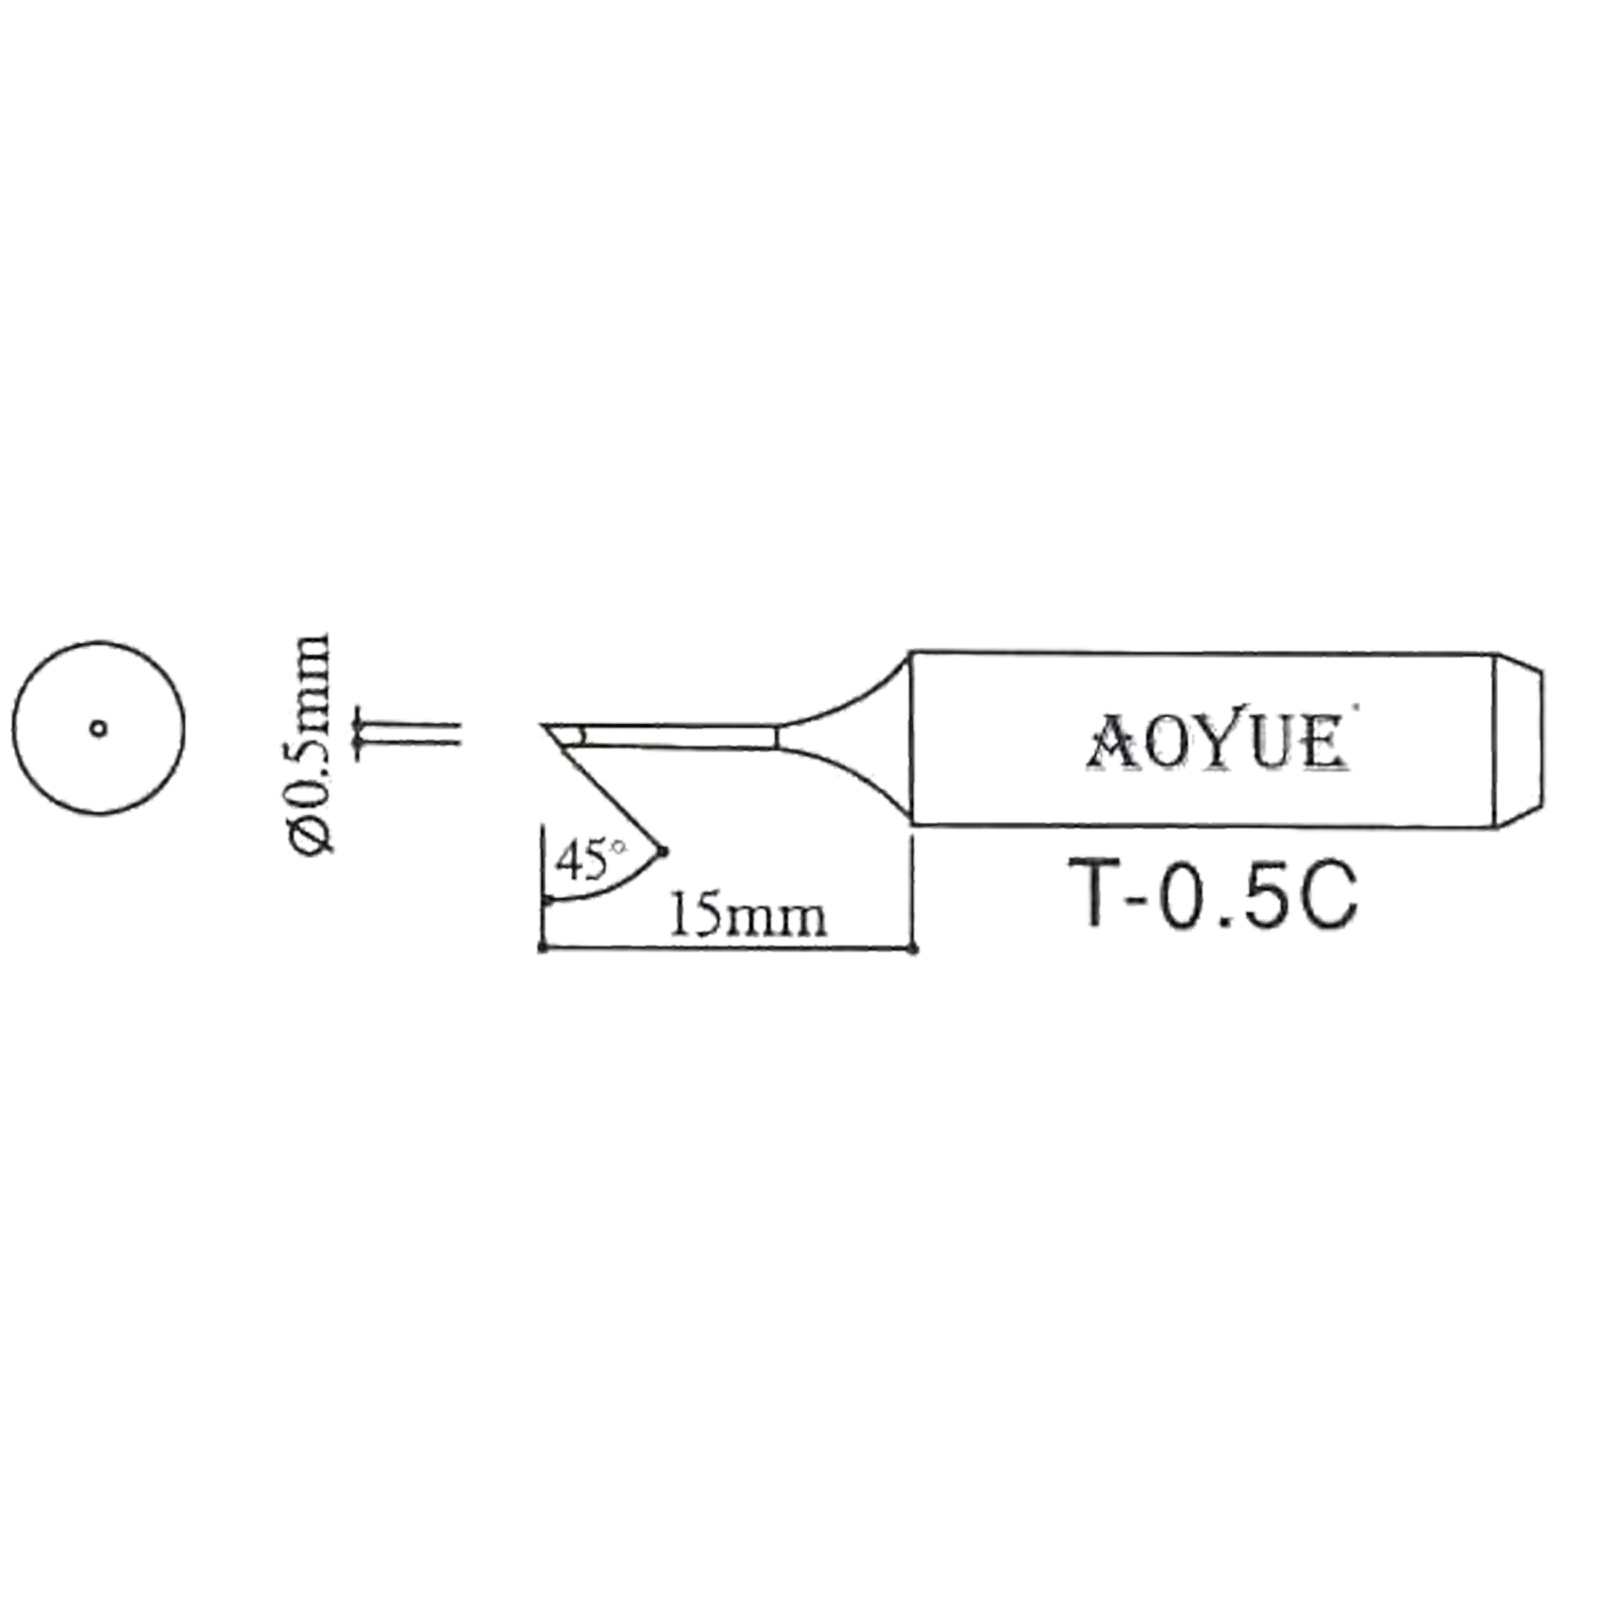 AOYUE T-0.5C Soldering Station Tip R 0.5mm / 45°